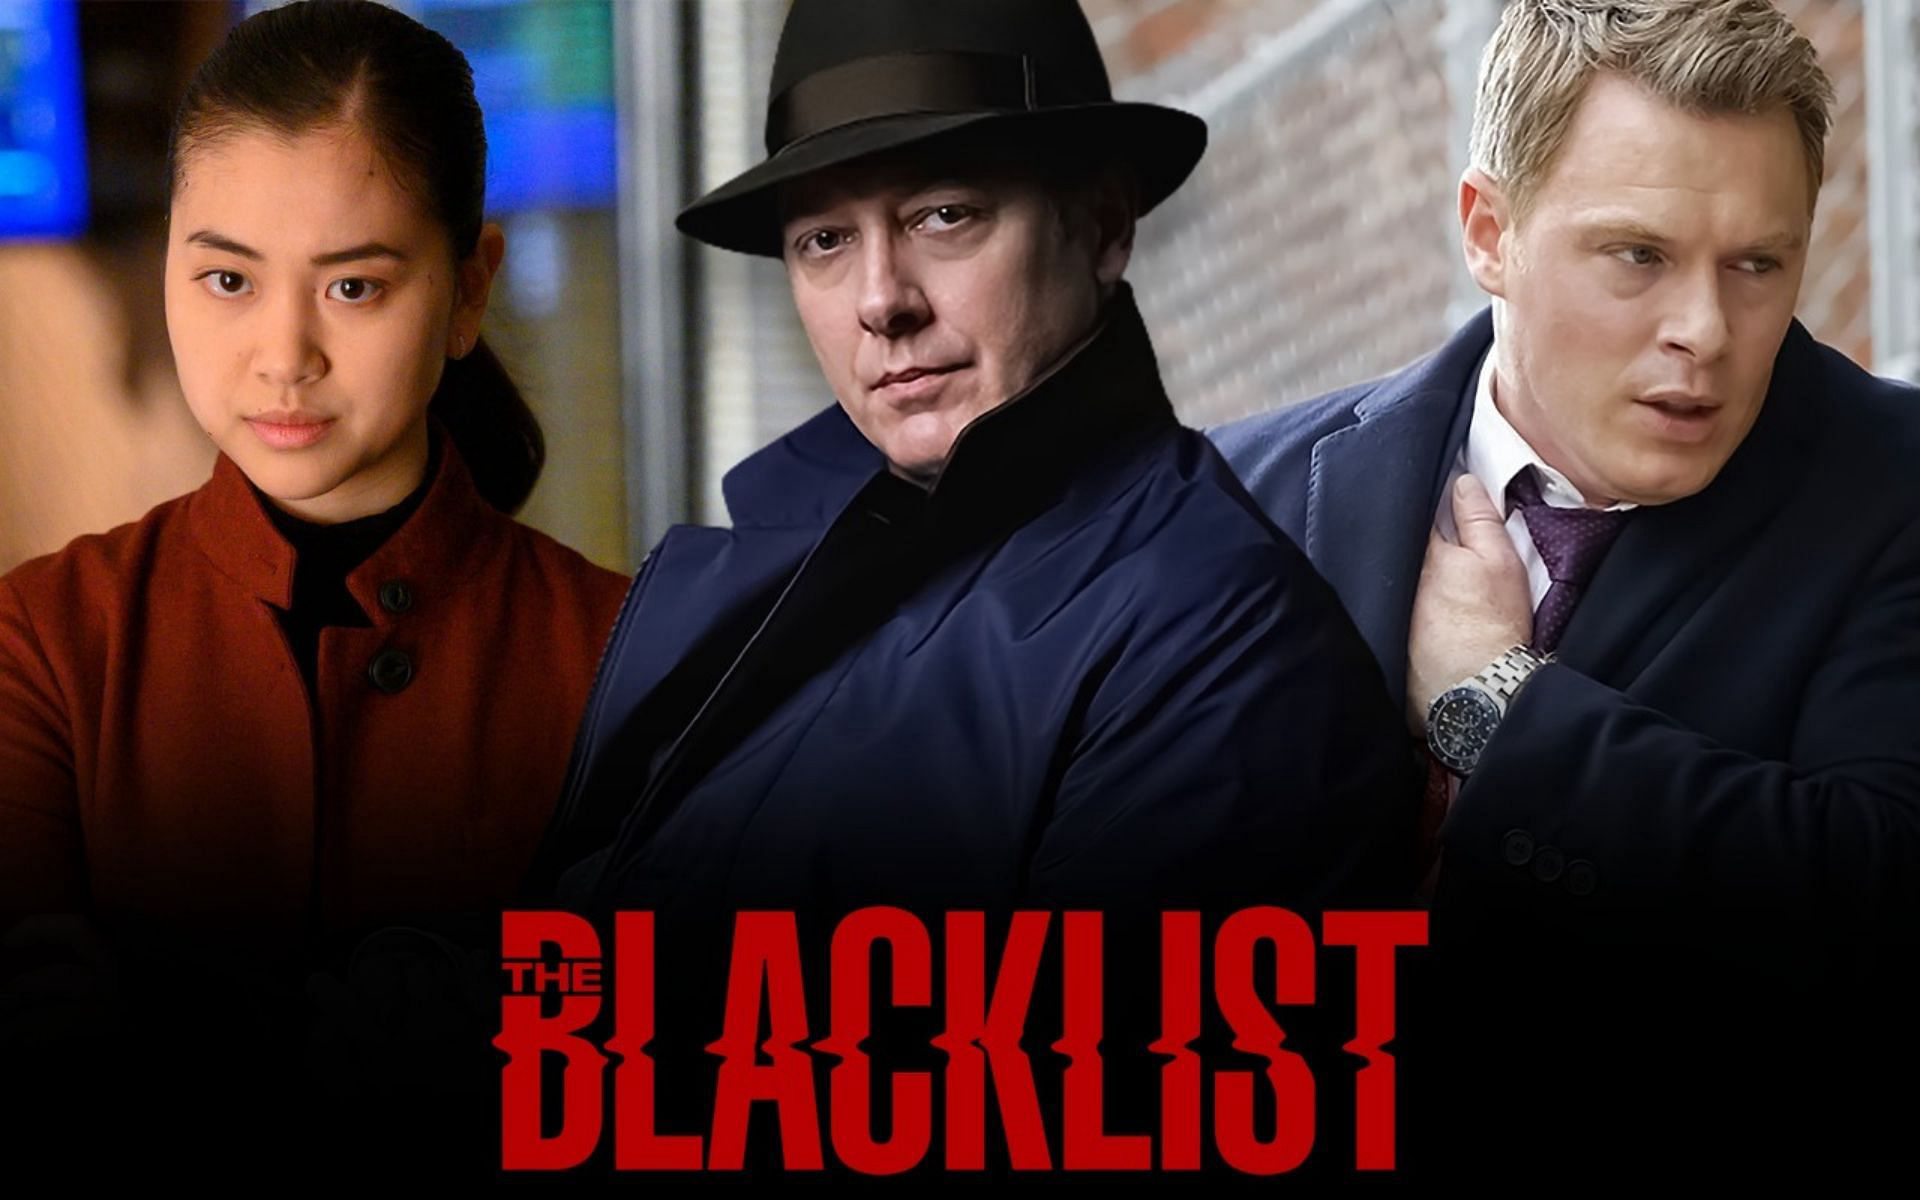 The Blacklist (Season 9) / The Blacklist (Season 9) (2022)